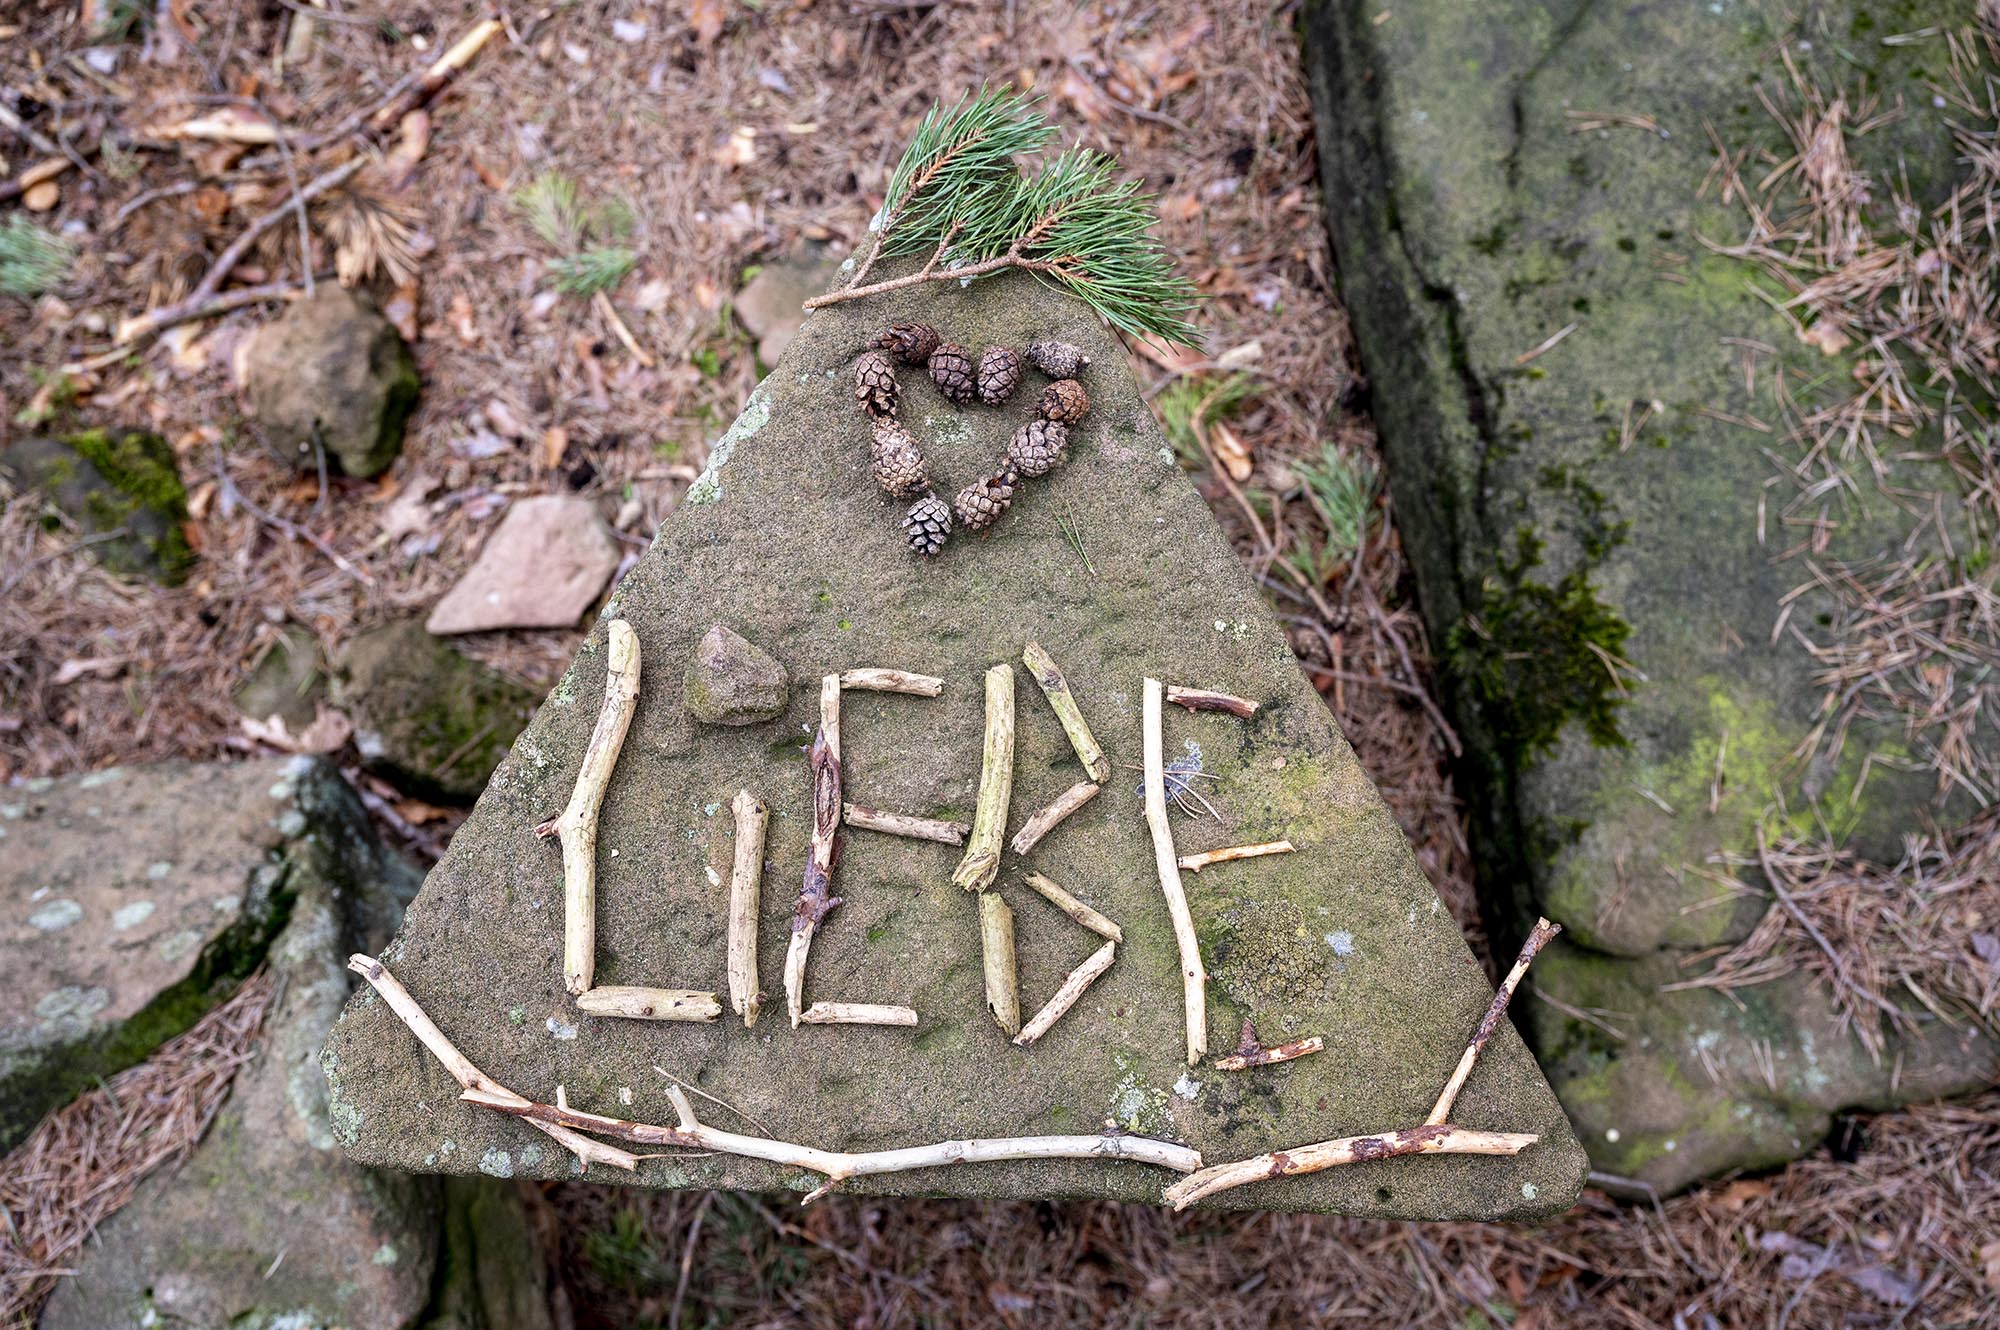 Auf einem mitten im Pfälzer Wald befindlichen dreieckigen Grenzstein hat jemand aus kleinen Holzstücken das Wort "Liebe" gelegt und es mit Kiefernzapfen (?) in Form eines Herzens geschmückt